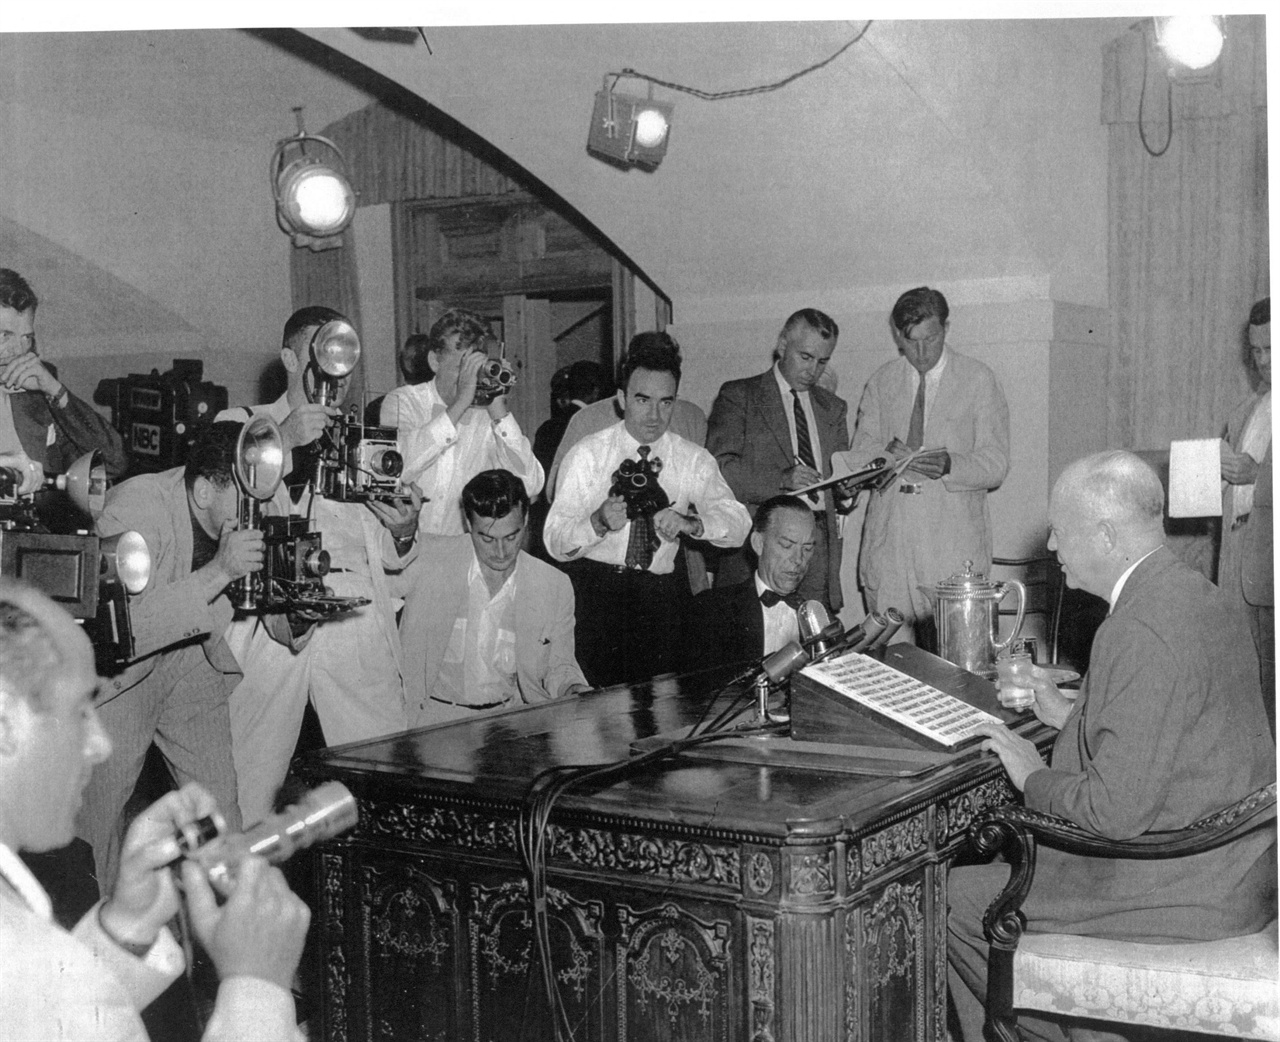  1953. 7. 26. 아이젠하워 대통령이 백악관 집무실에서 정전 담화문을 발표하고 있다. 